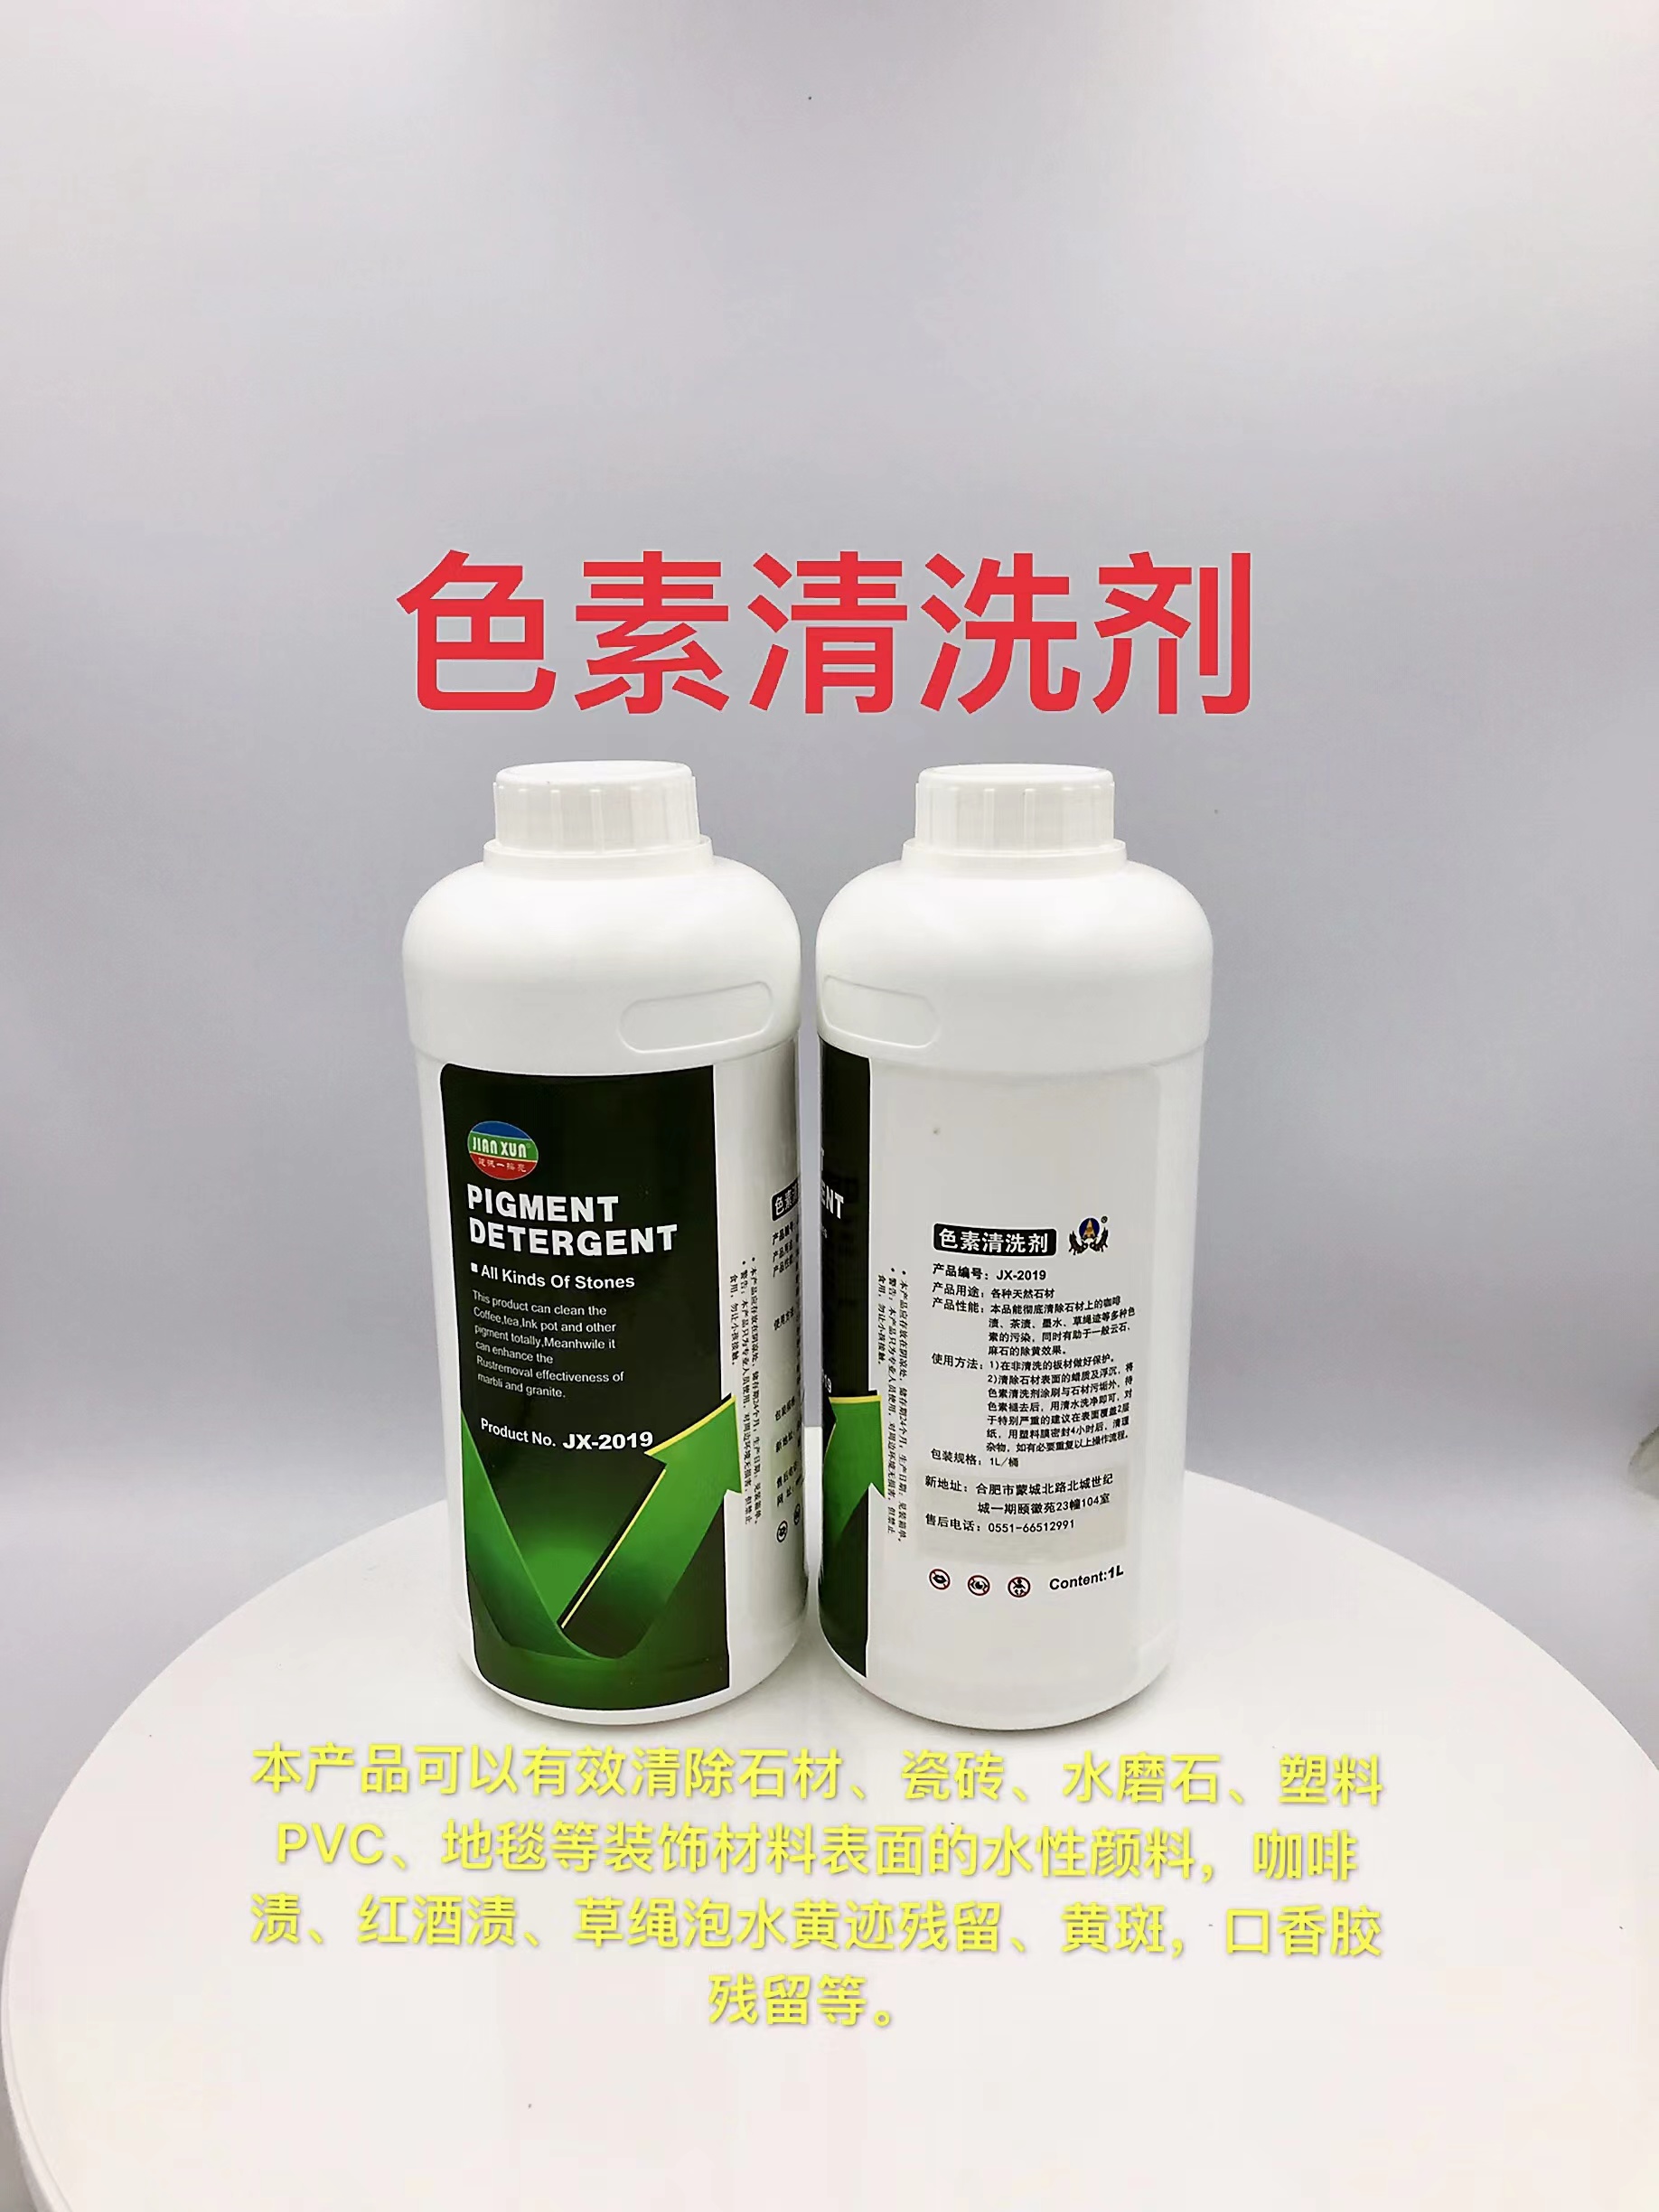 JX-2019石材花岗岩色素清洗剂生产厂家销售价格 建讯石材